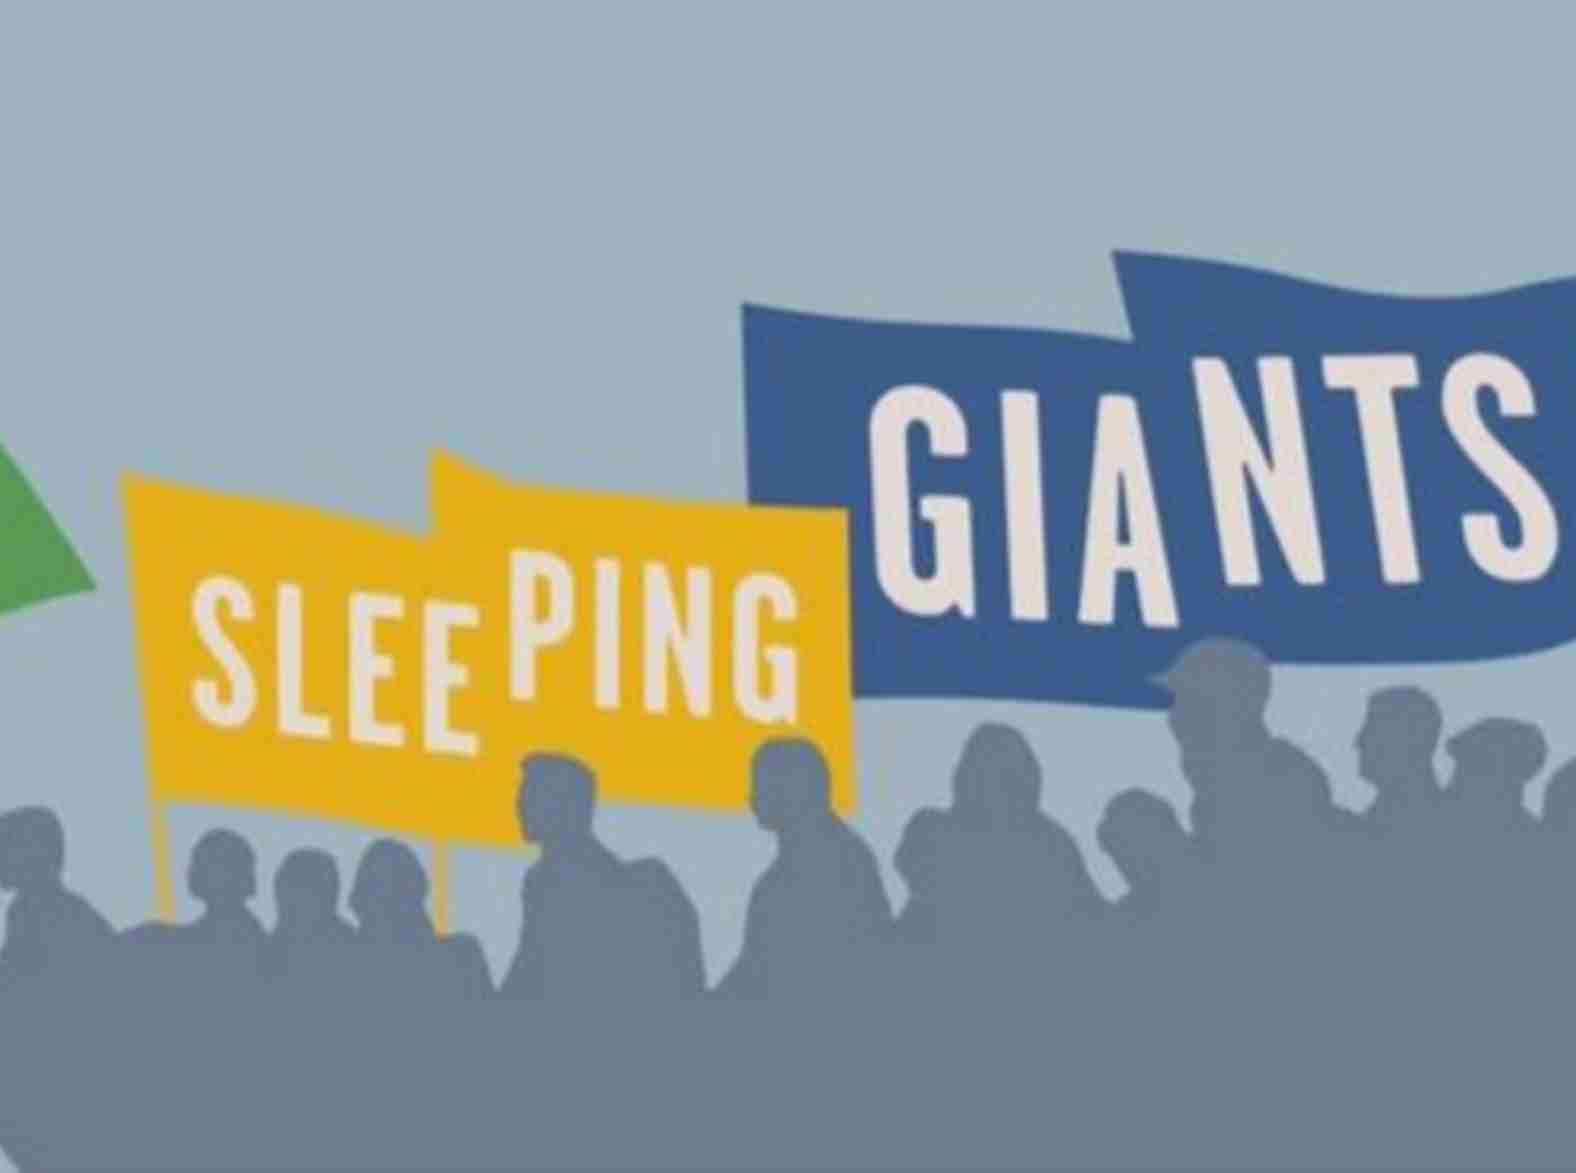 Sleeping Giants Brasil recebeu mais de R$ 2,4 milhões de ONGs